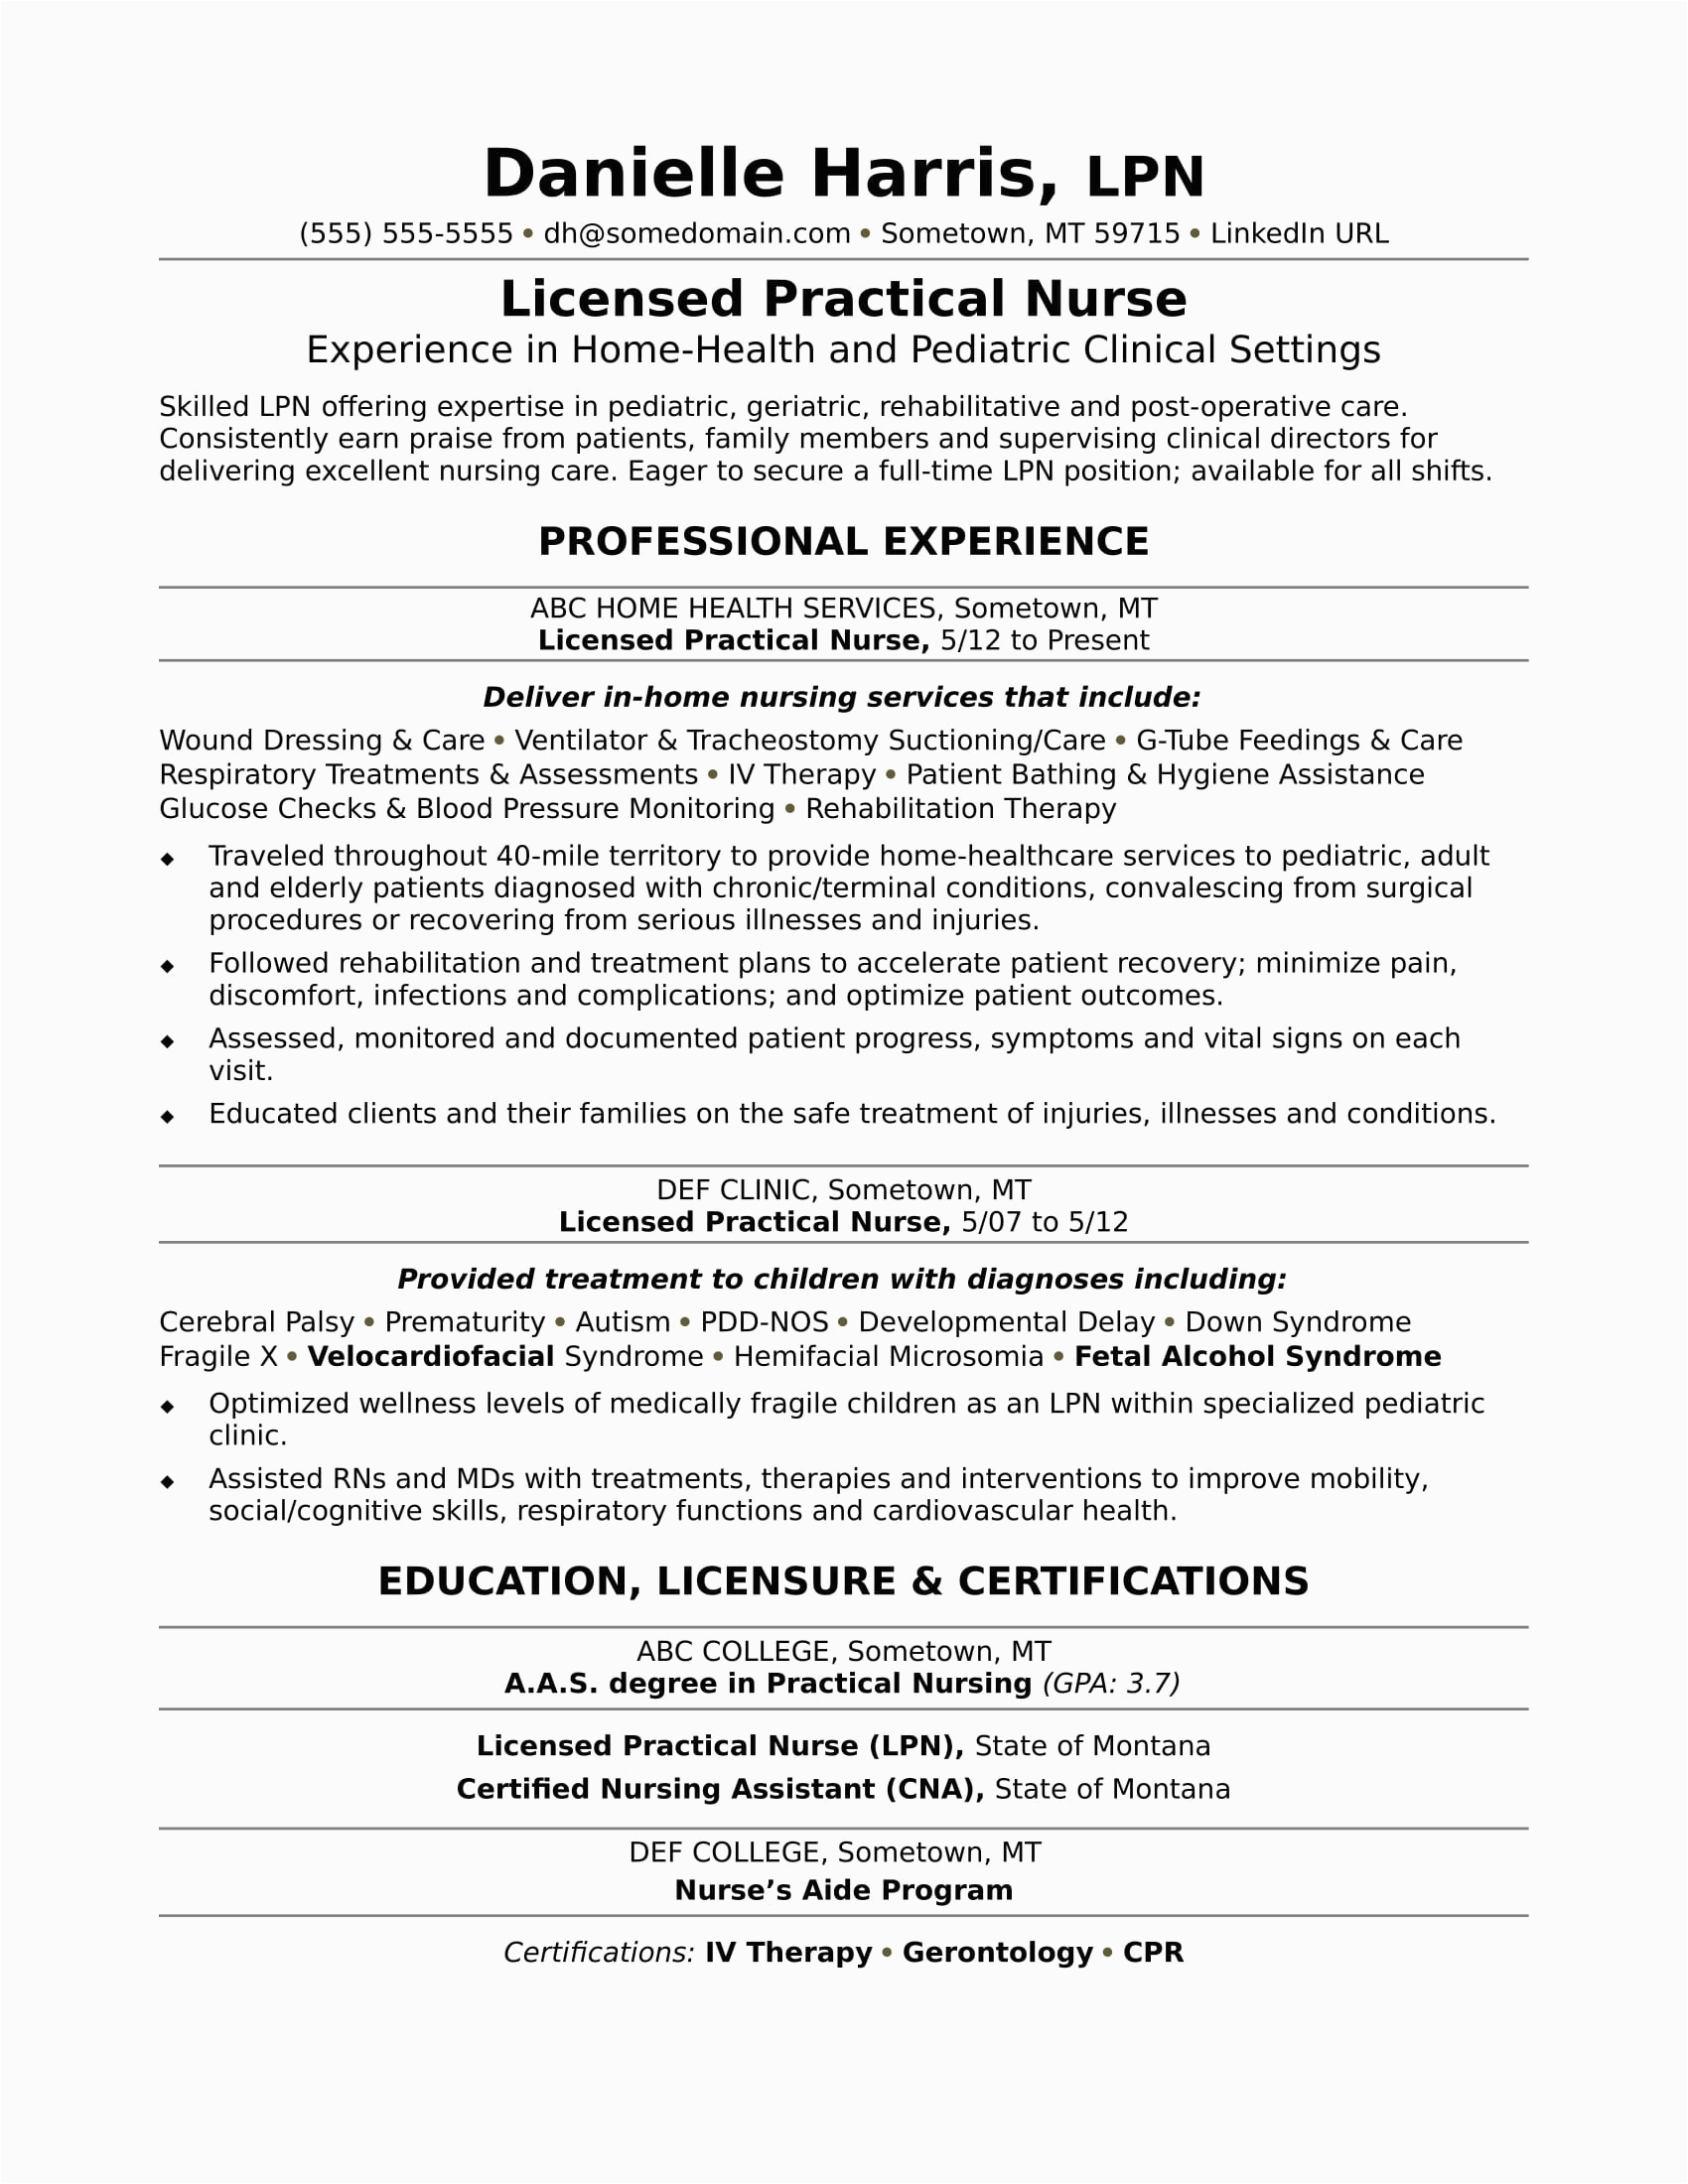 Sample Resume for A Nurse Position Licensed Practical Nurse Resume Sample